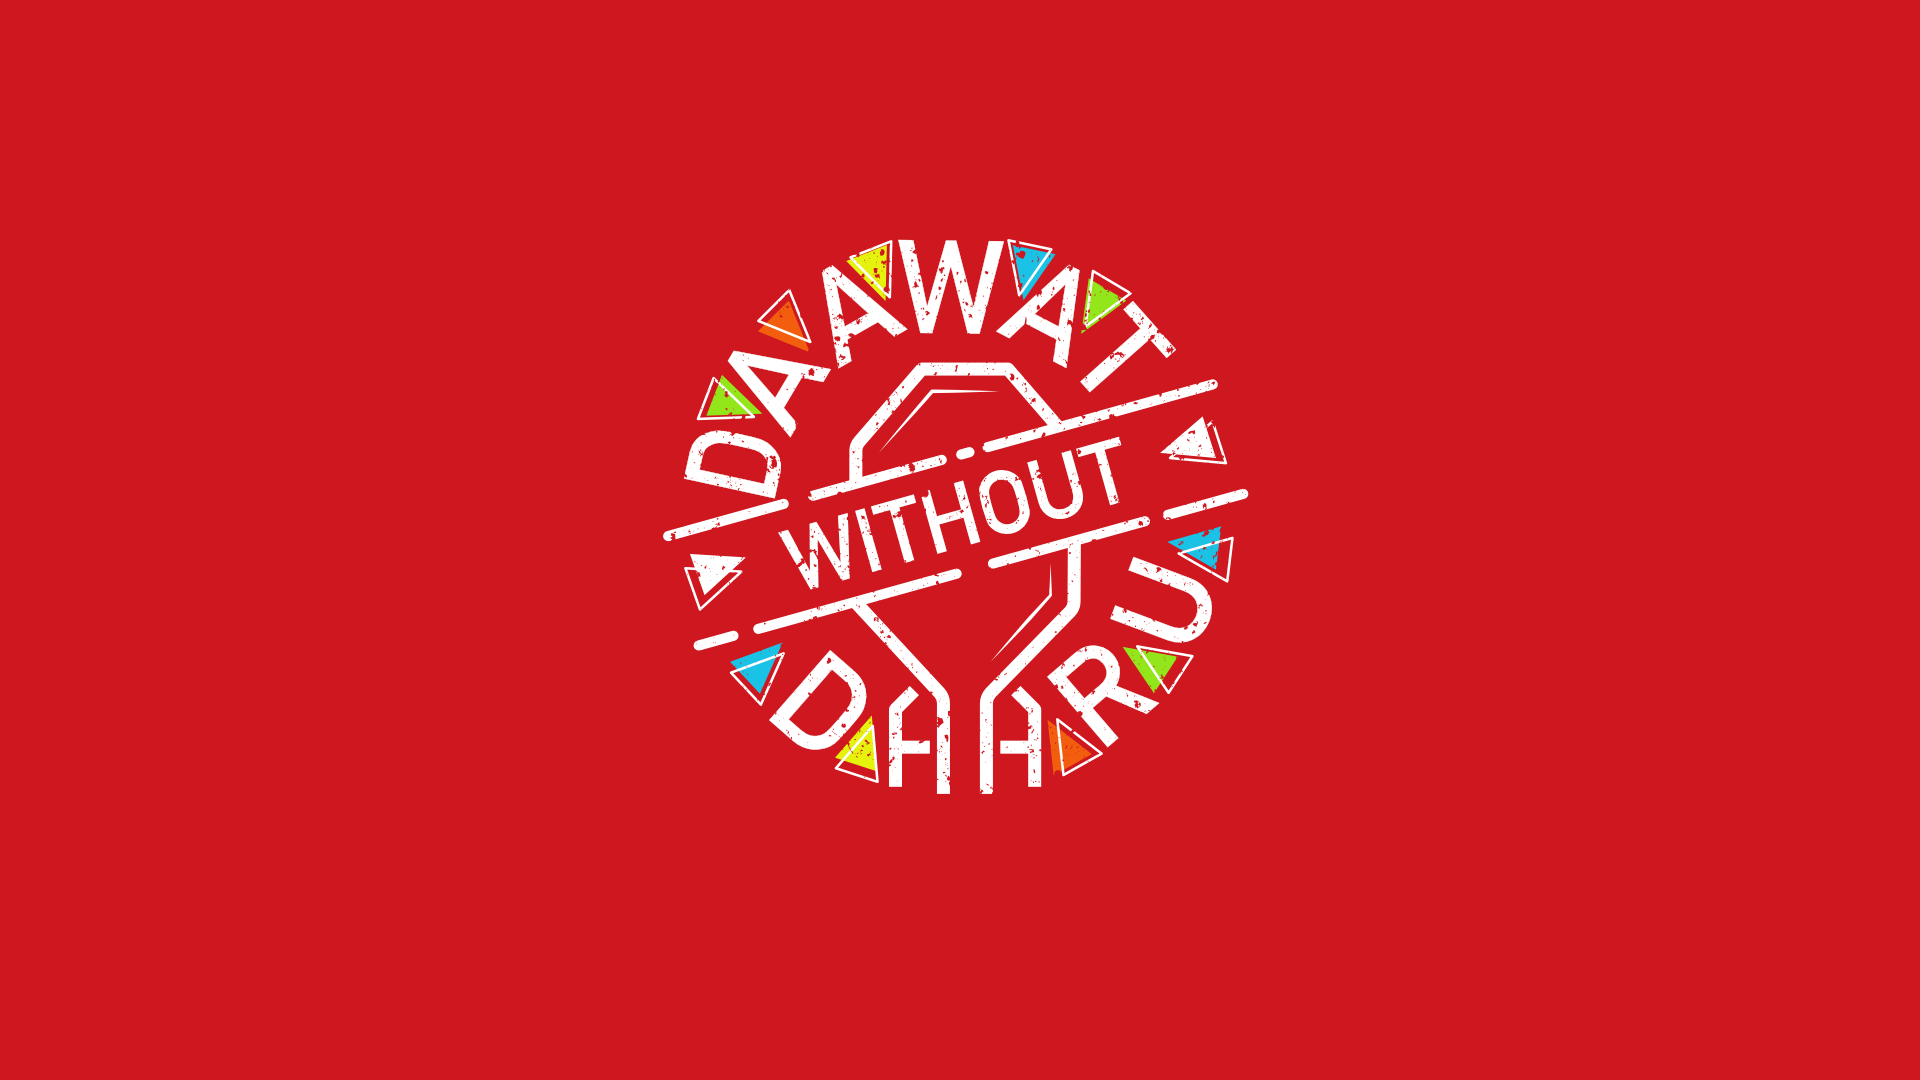 <p>Daawat without Daaru (à°®à°‚à°¦à± à°²à±‡à°¨à°¿ à°µà°¿à°‚à°¦à±)</p>

<p>Daawat is an Urdu words which translates to a party or a function or a celebration. daaru means alcohol. <br />
Daawat without daaru is a campaign :<br />
a.) To reaffirm that, a gathering can happen without ‘Daaru.’(alcohol) <br />
b.) To spread awareness about mishaps because of excessive drinking. <br />
c.) To help people lead a healthier life, without alcohol.</p>